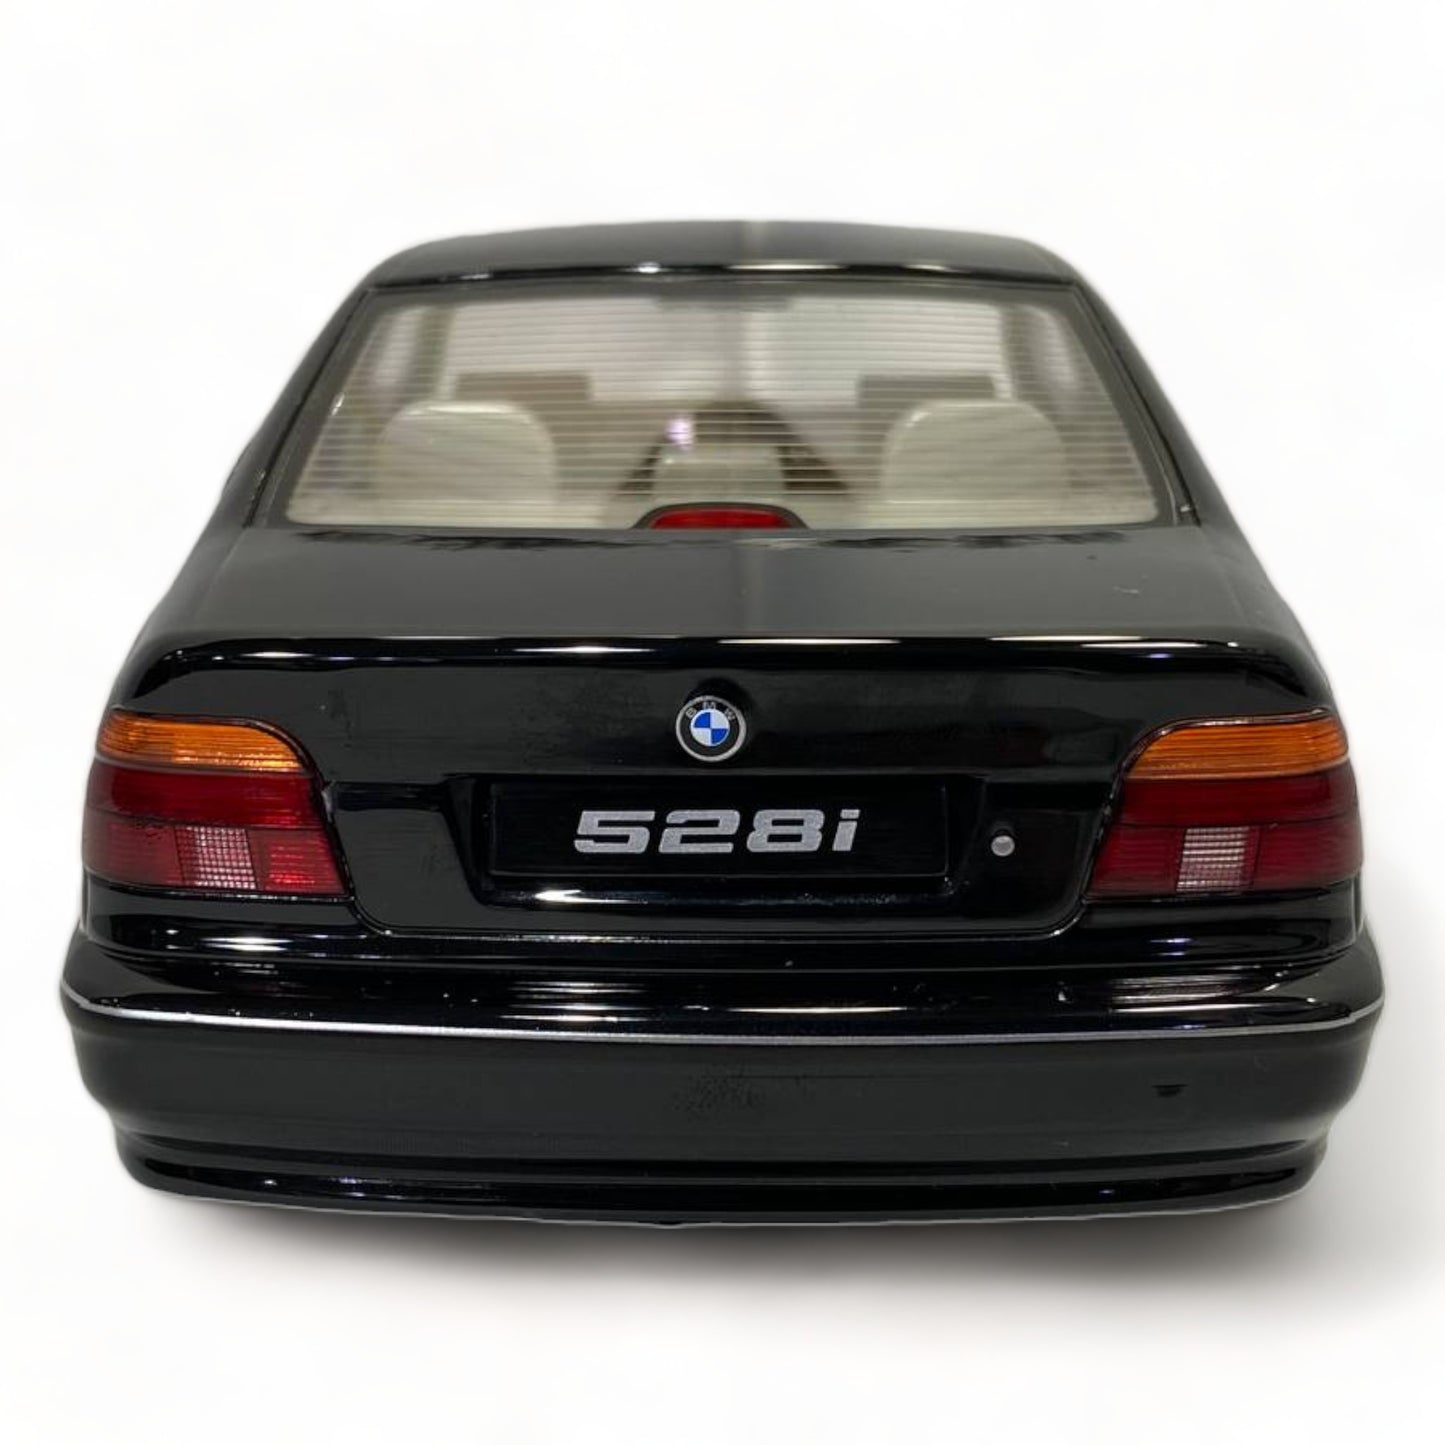 1/18 KK SCALE BMW 528i E39 SEDAN BLACK Model Car